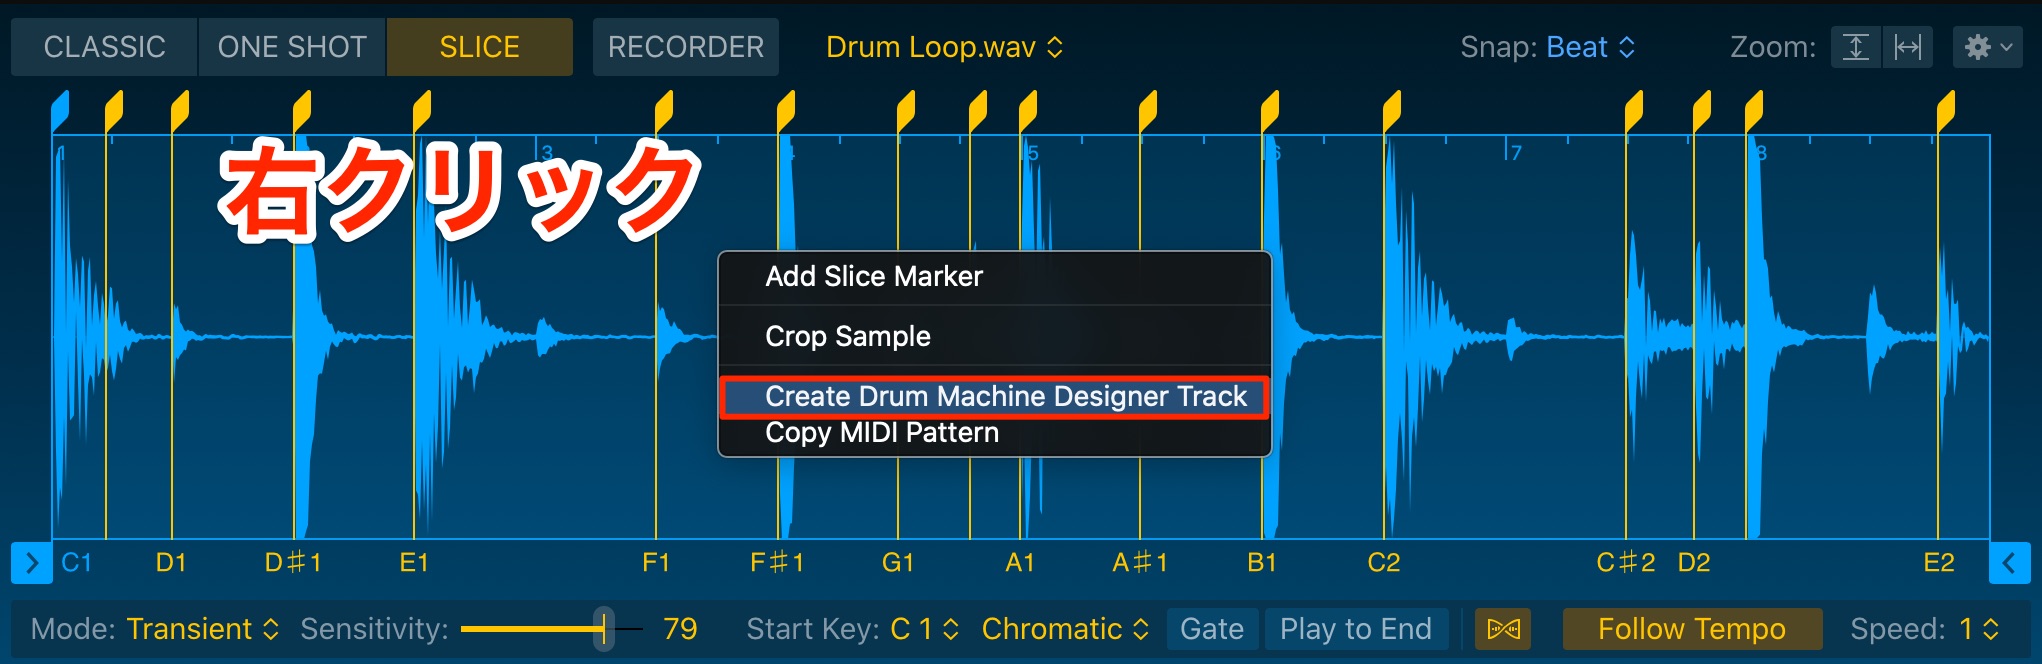 Create_Drum_Machine_Designer_Track